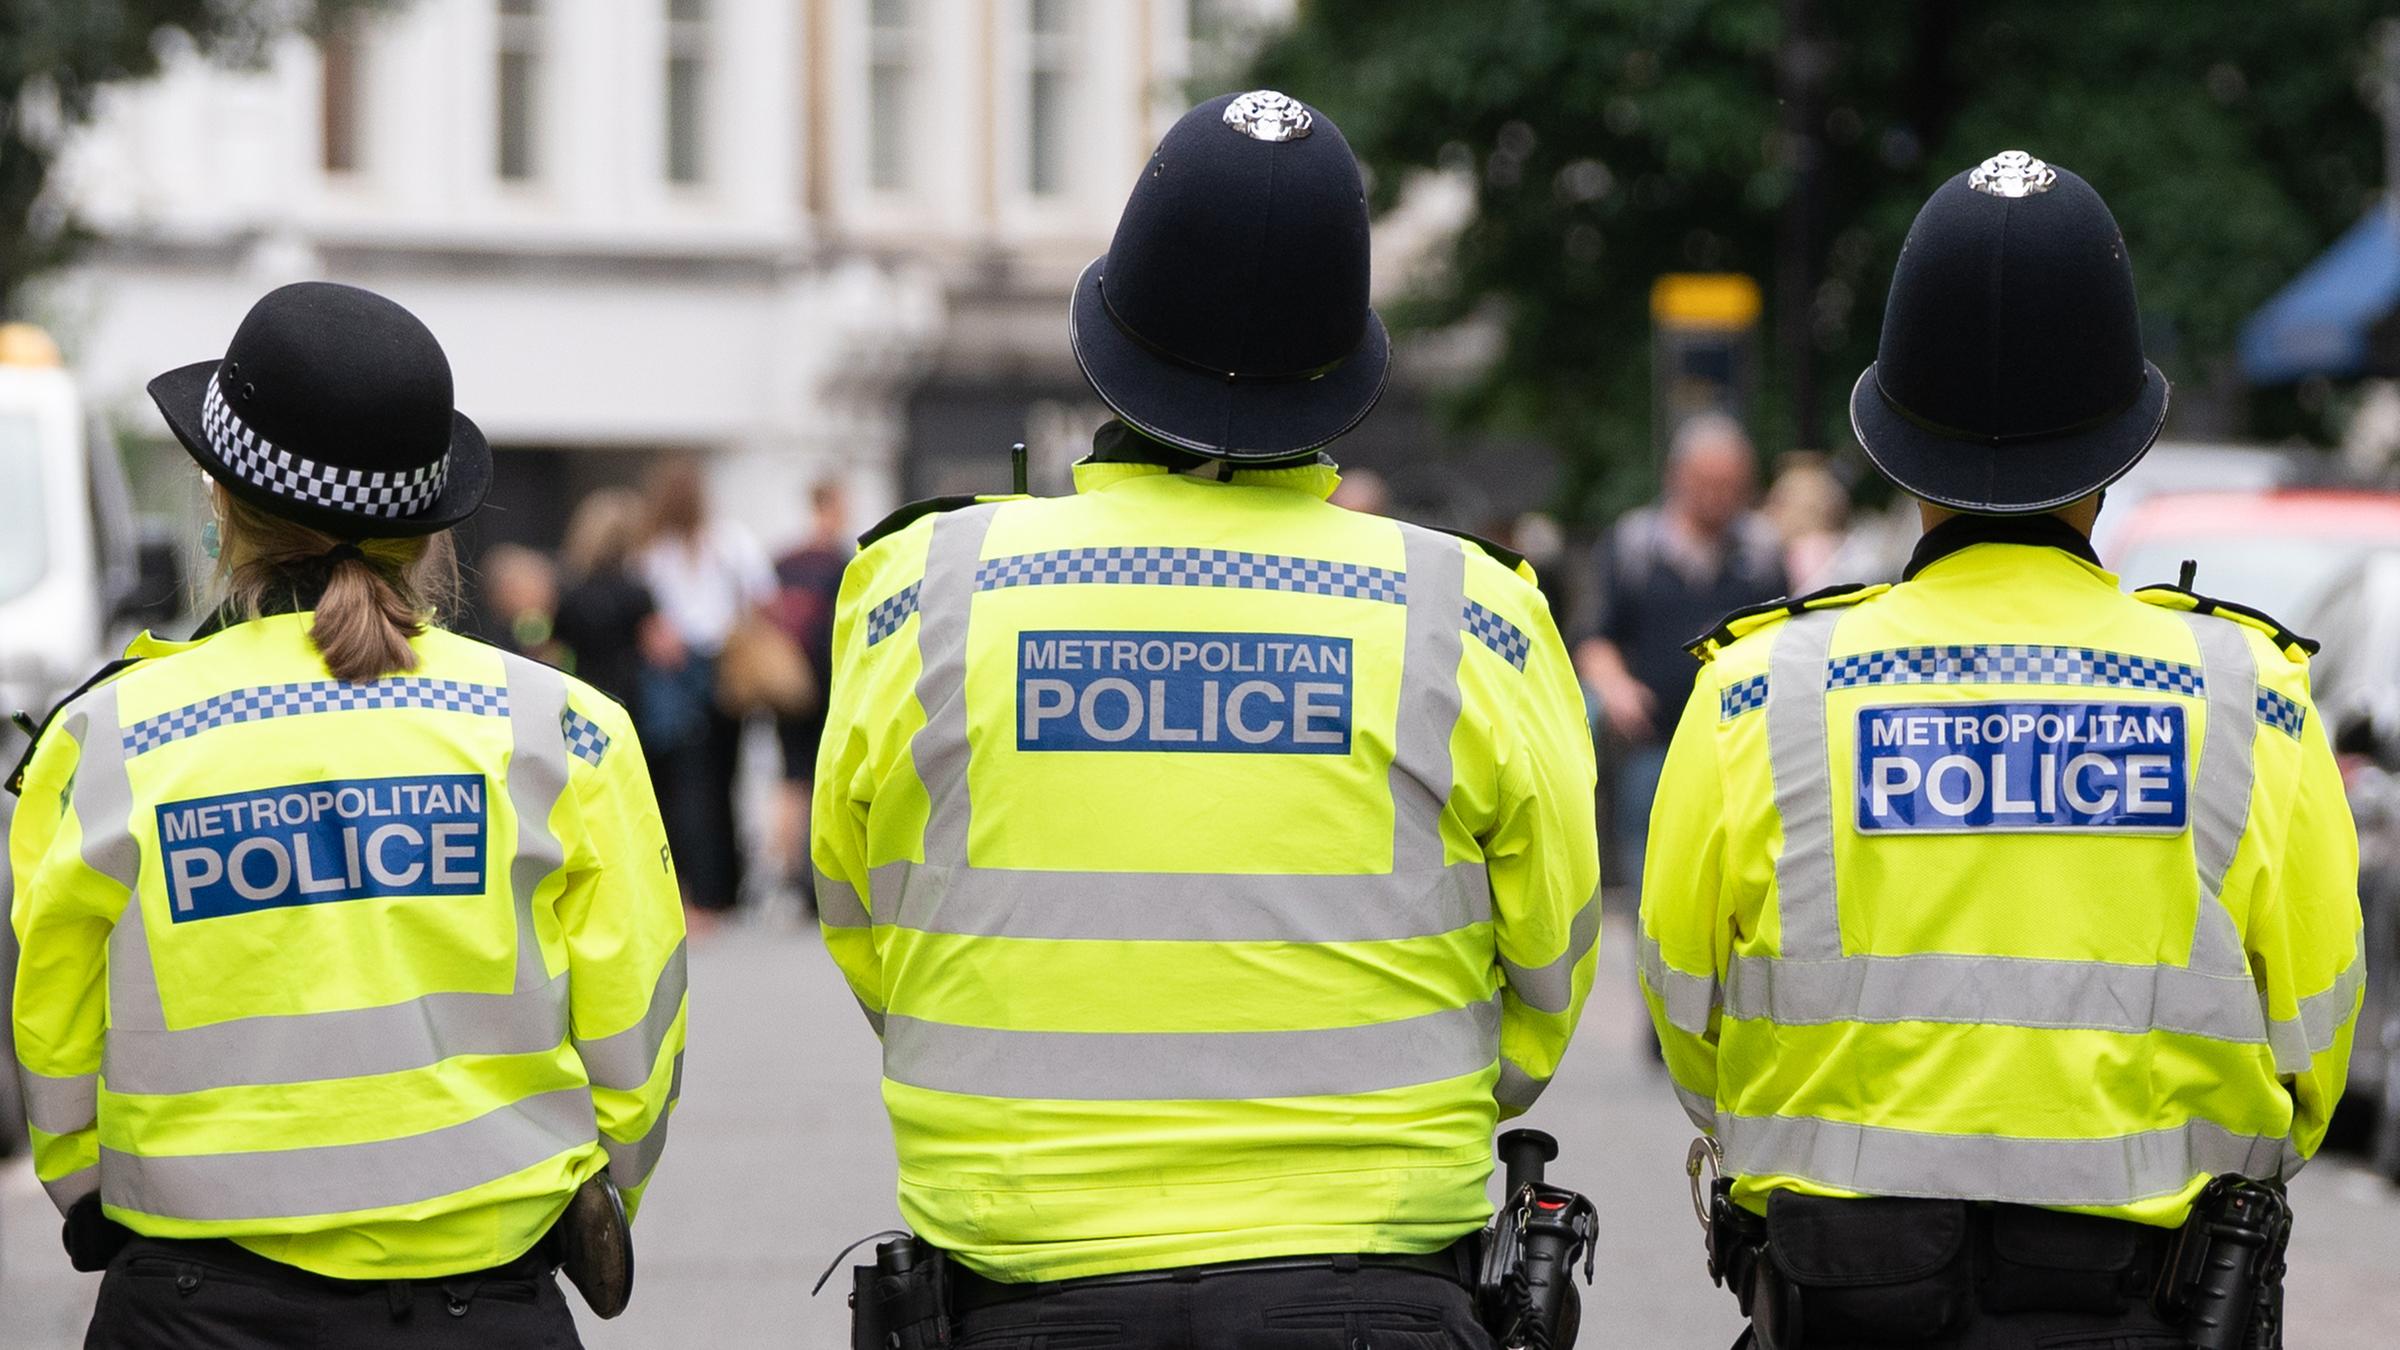 Großbritannien, London: Polizisten stehen während einer Demonstration von Mitgliedern der Extinction Rebellion auf einer Straße.